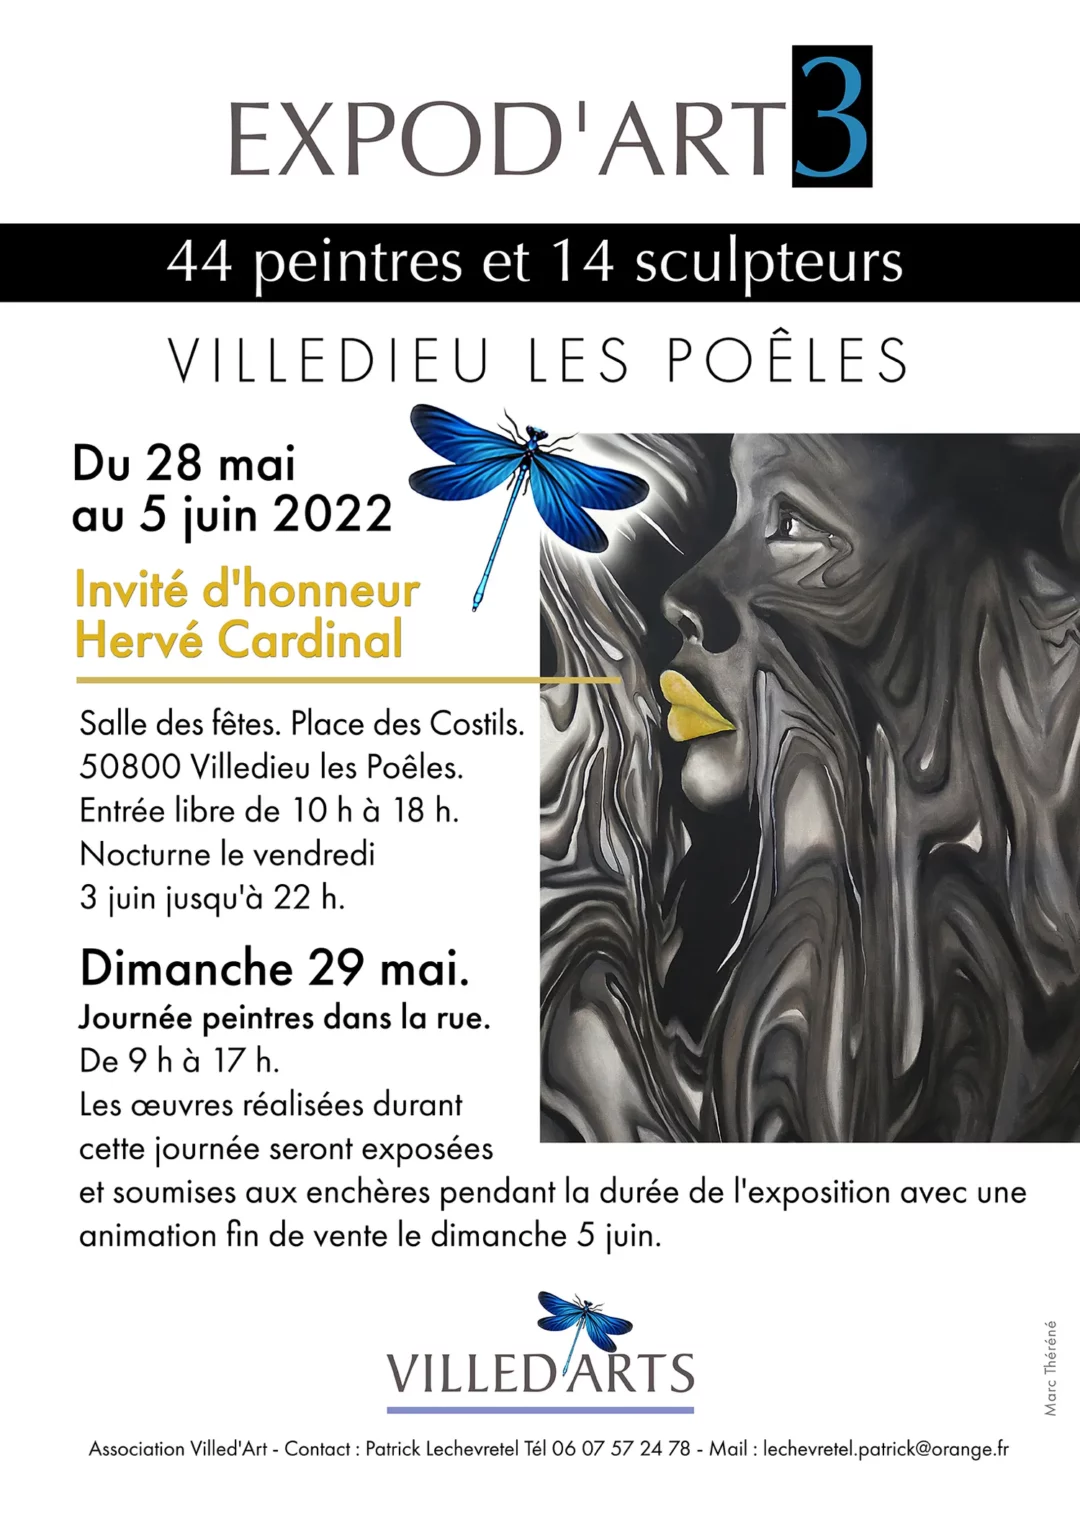 EXPOD’ART 3 du 28 mai au 5 juin 2022 à Villedieu Les Poêles